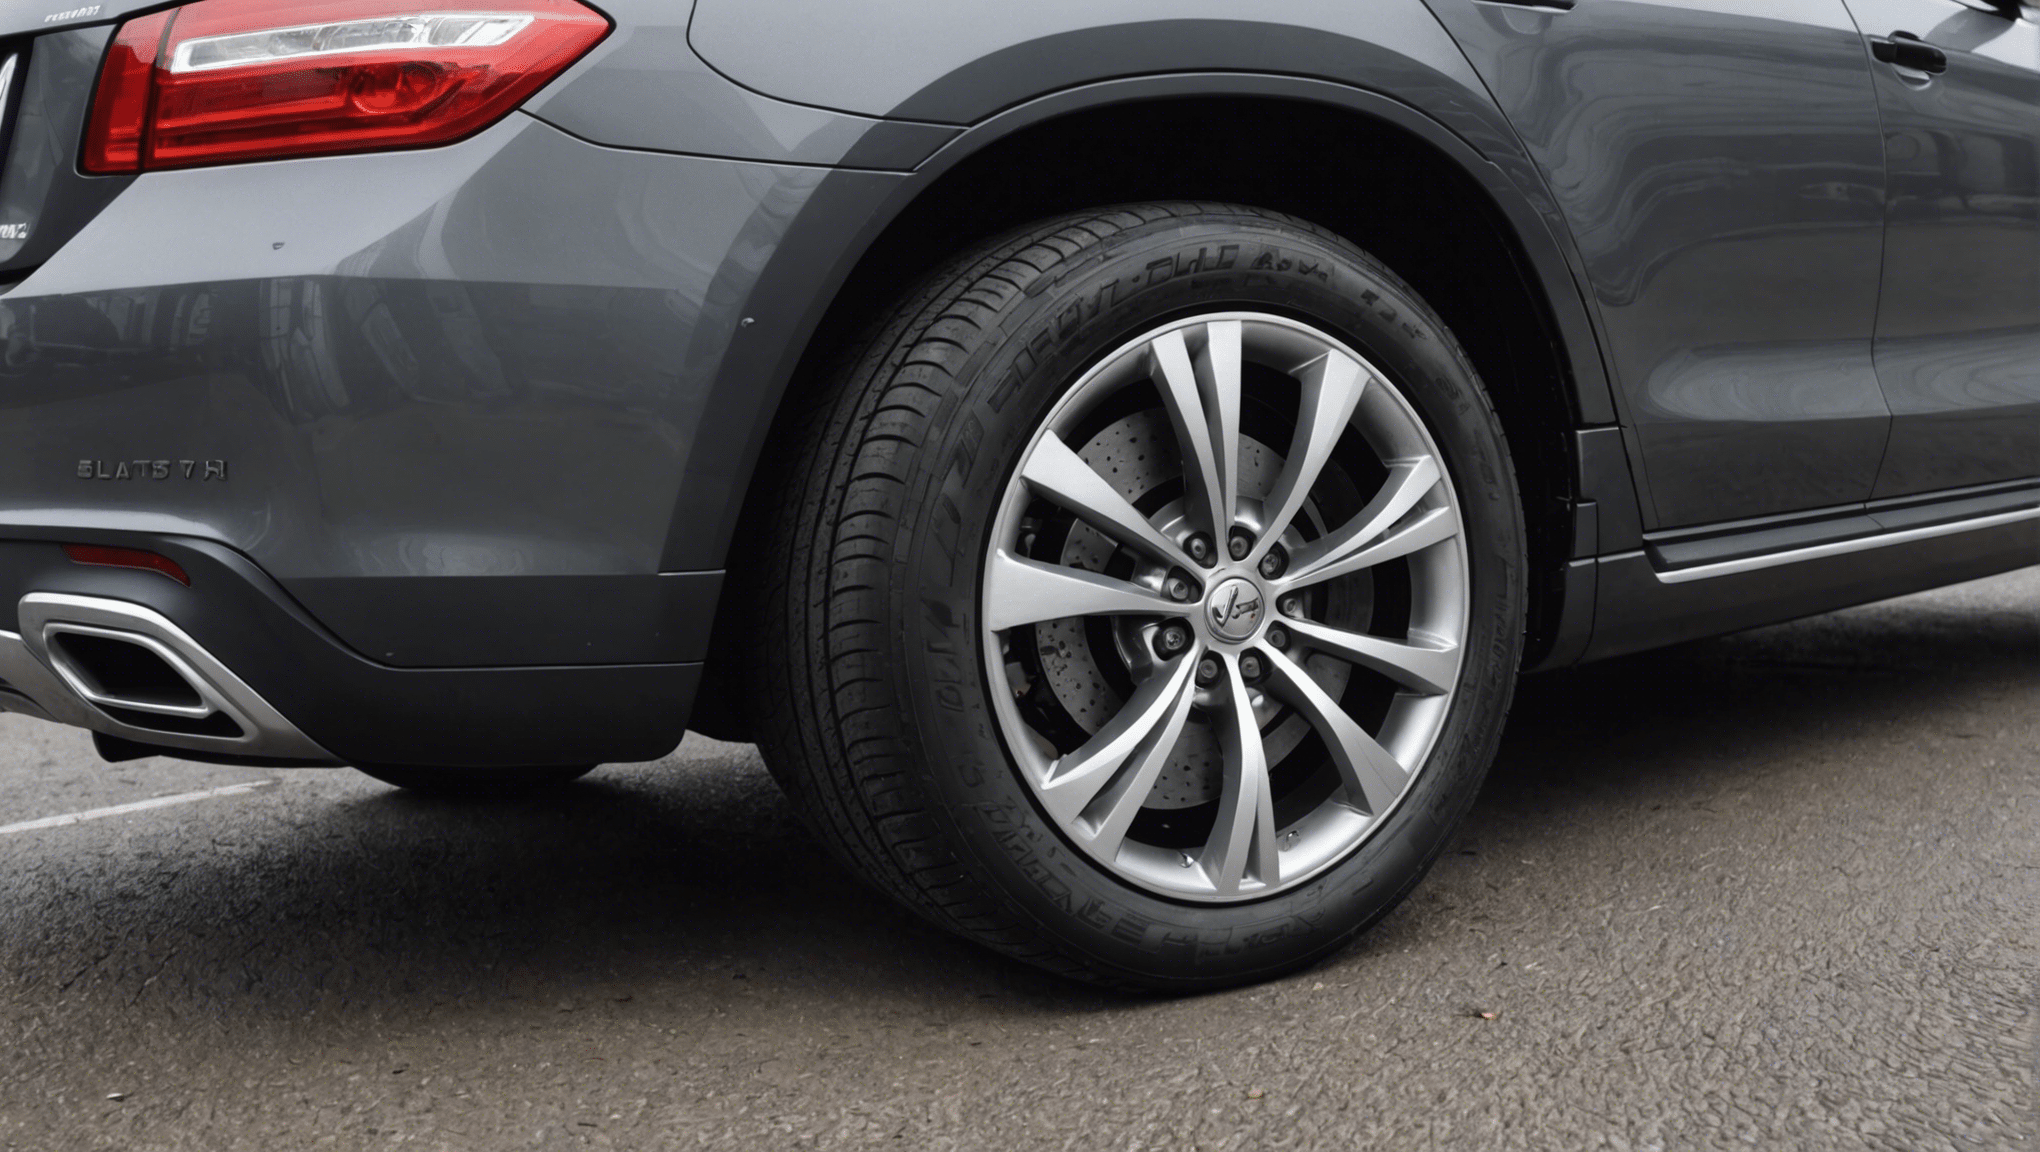 découvrez les dernières tendances en matière de pneumatiques automobiles et restez informé des innovations du secteur. trouvez les pneus adaptés à vos besoins et profitez des avancées technologiques pour une conduite plus sûre et efficiente.